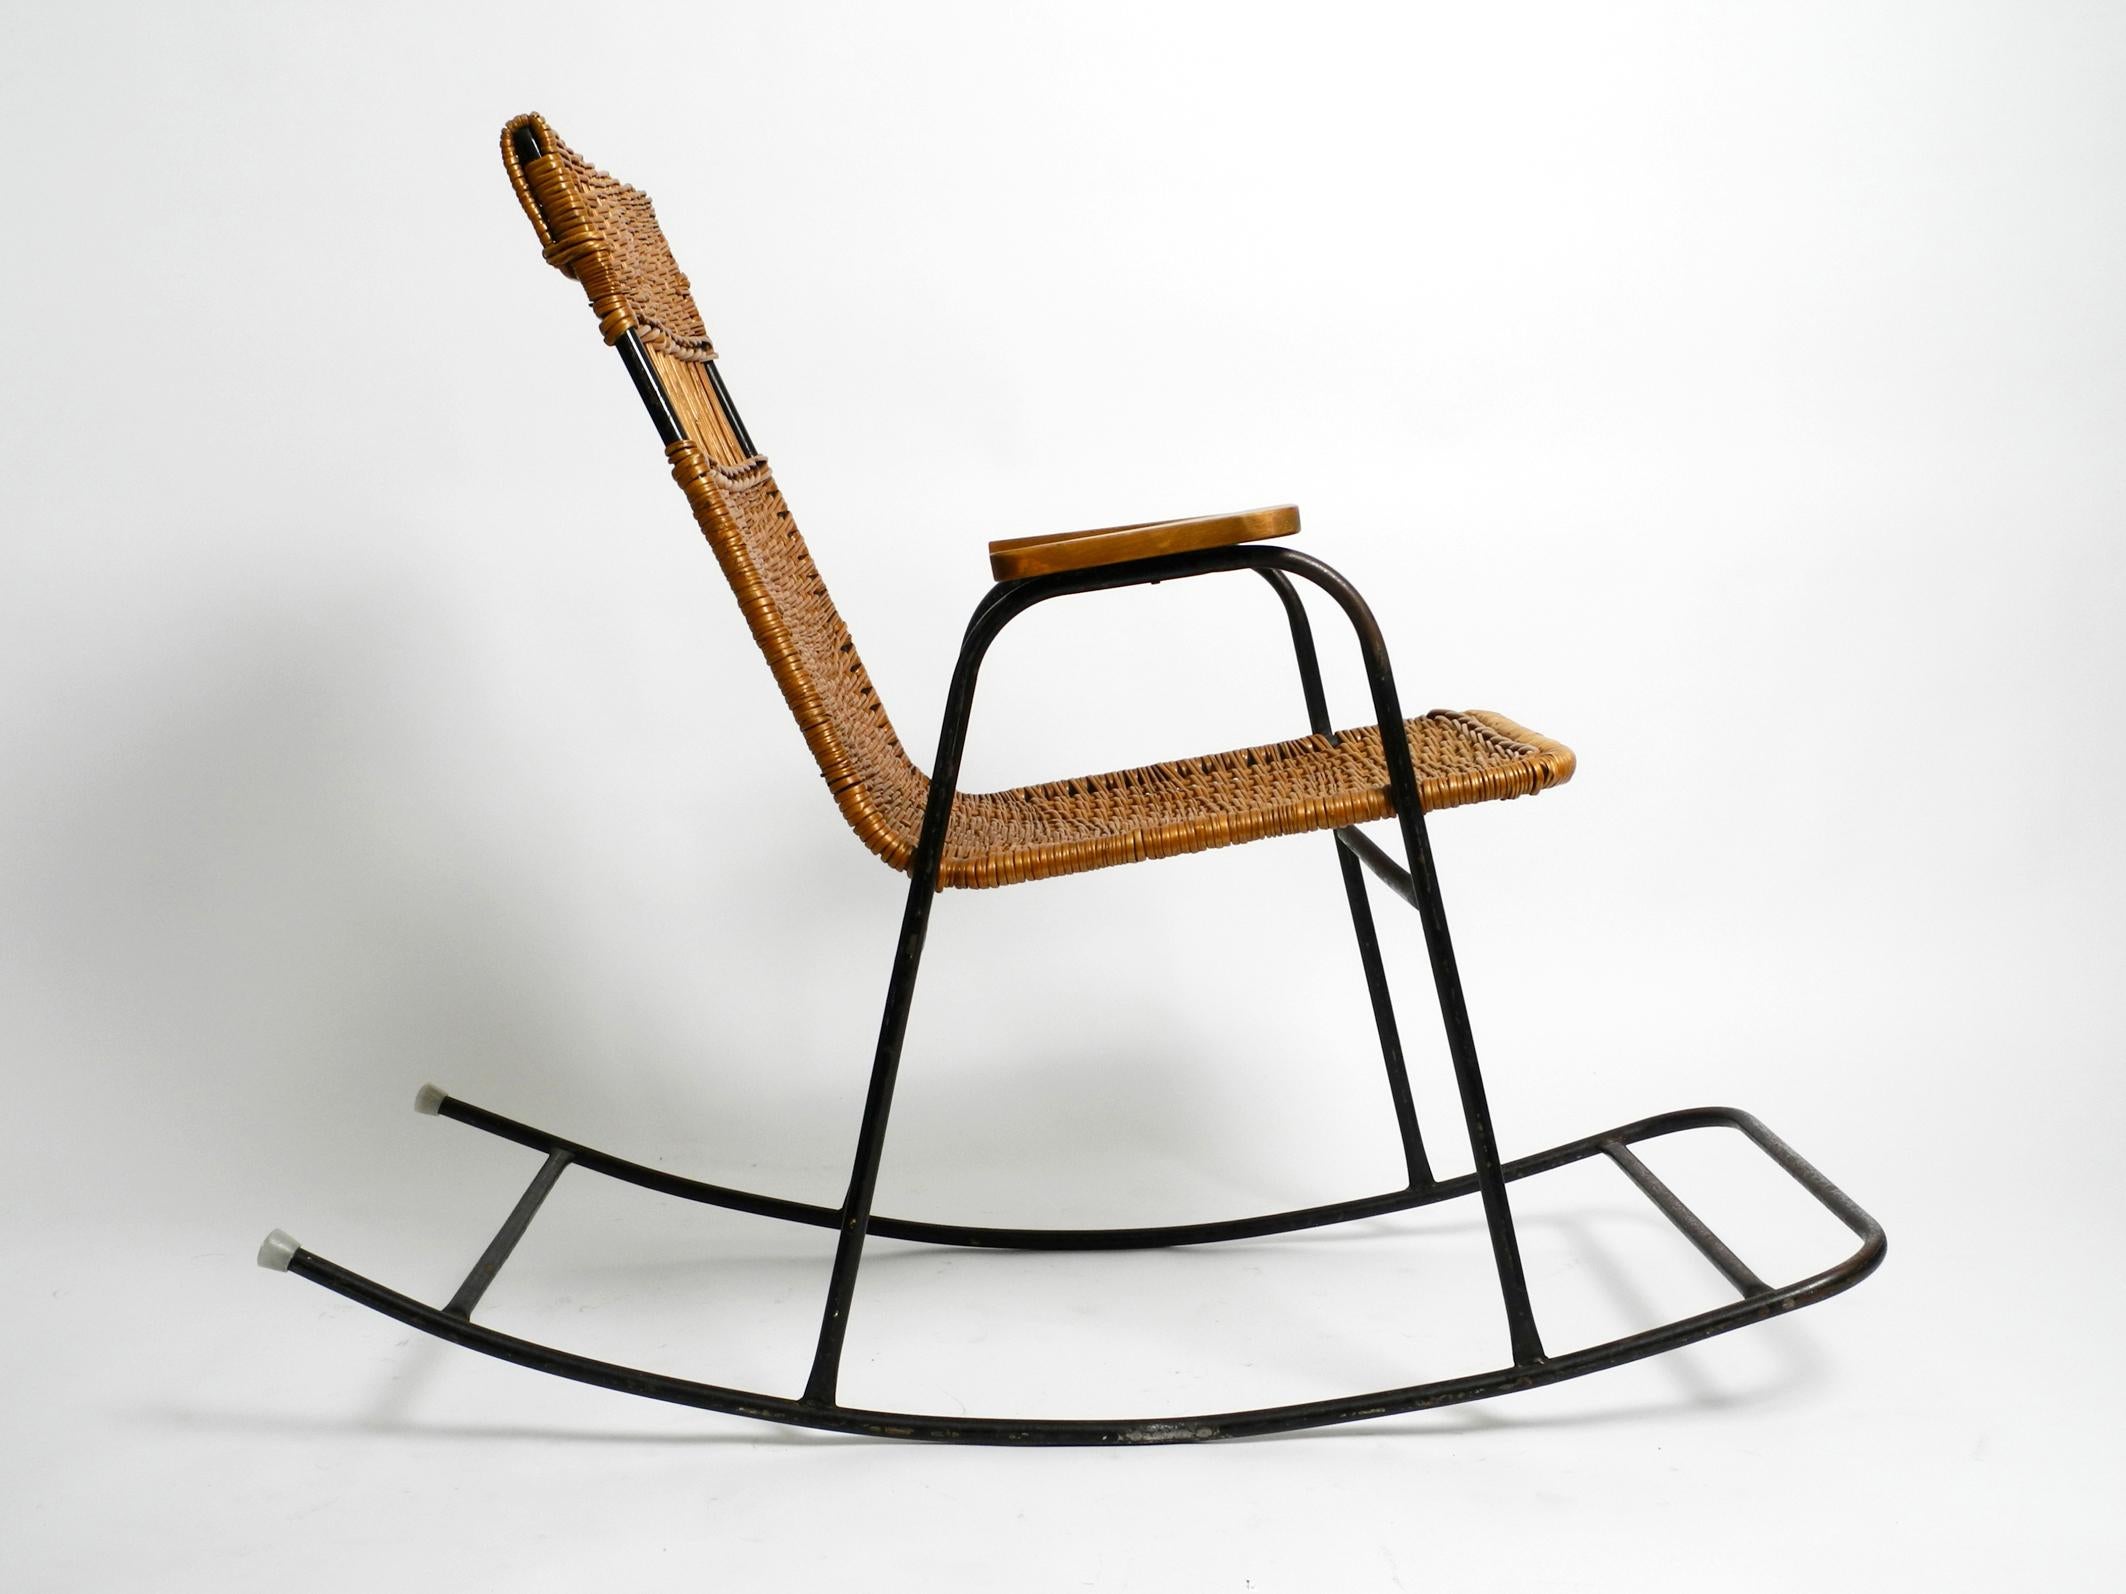 Magnifique fauteuil à bascule moderne du milieu du siècle avec accoudoirs en métal peint en noir et en rotin.
Design typique des années 1950. Une pièce magnifique et étonnante.
Le cadre est entièrement réalisé en fer laqué noir. L'assise et le